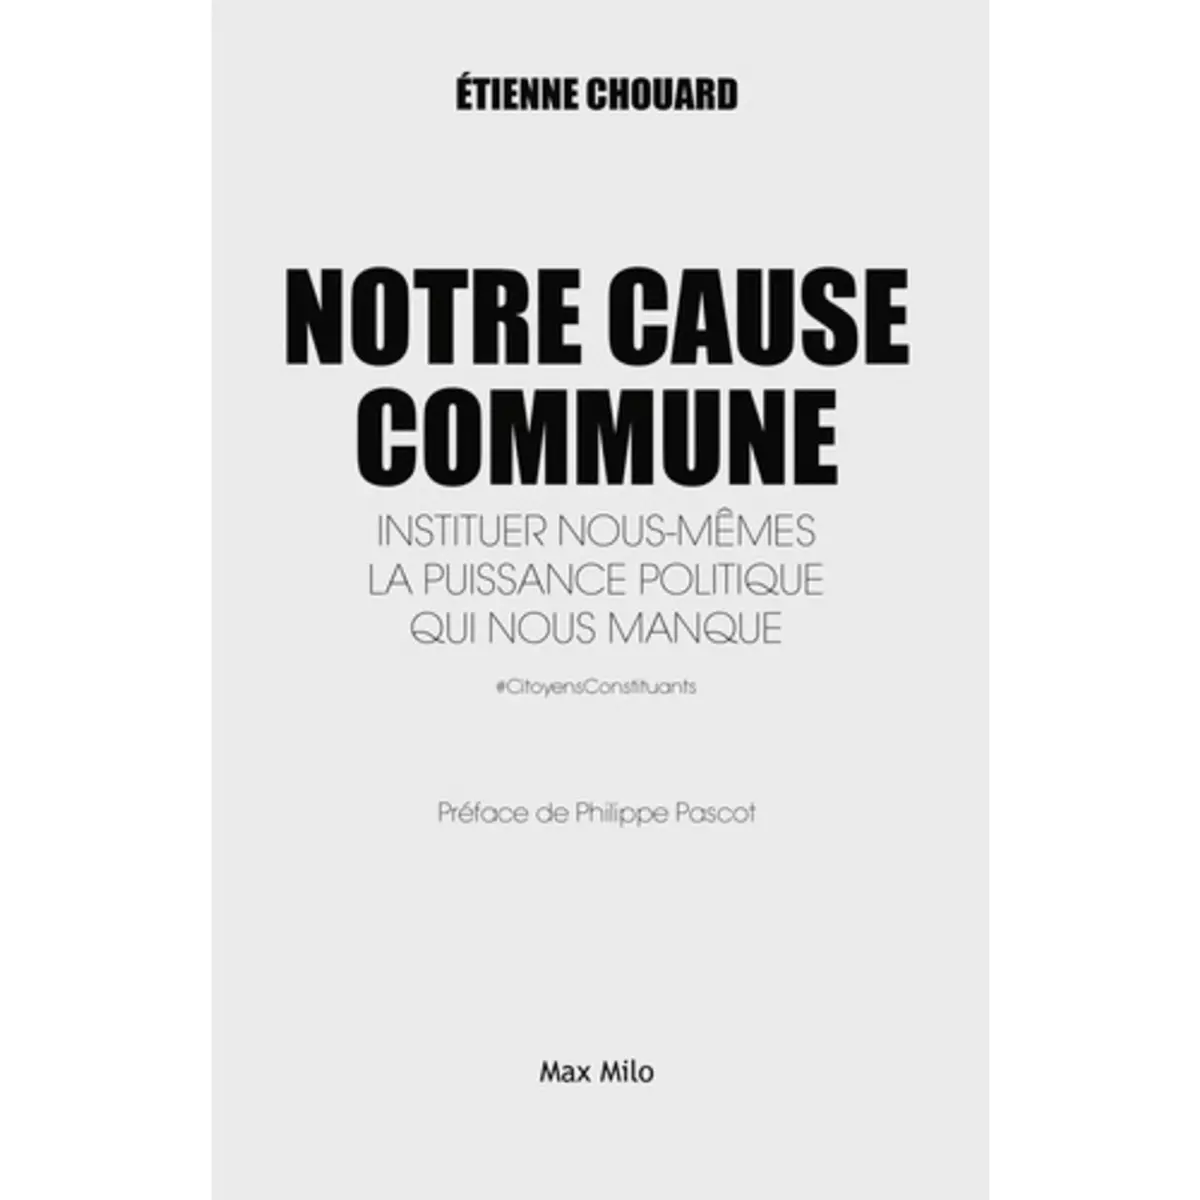  NOTRE CAUSE COMMUNE. INSTITUER NOUS-MEMES LA PUISSANCE POLITIQUE QUI NOUS MANQUE, Chouard Etienne